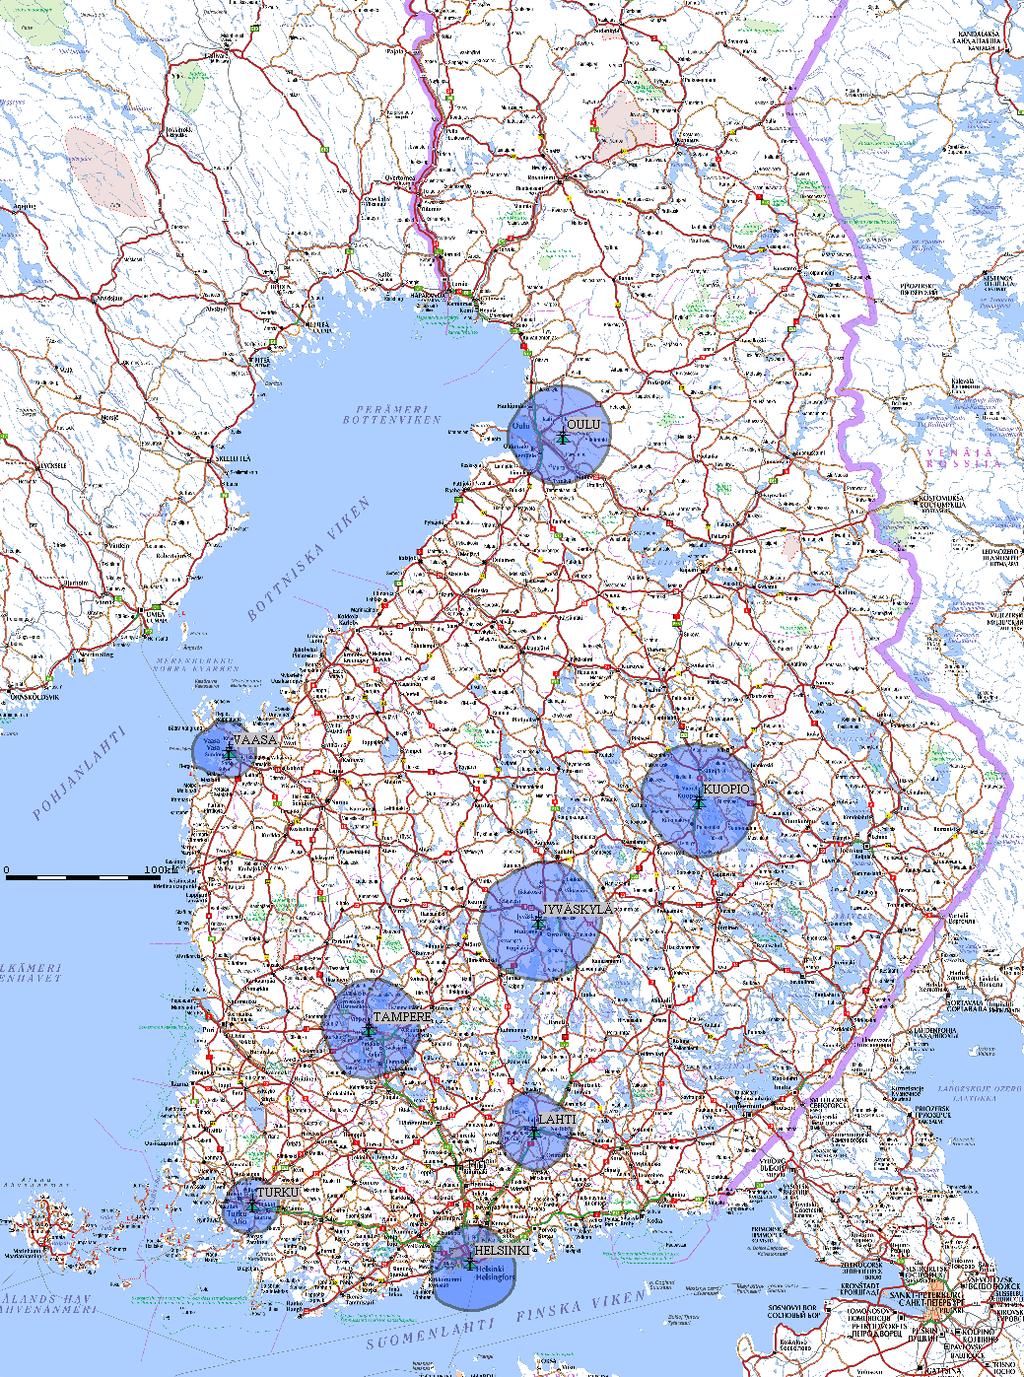 Uusi kaupunkiverkko TK a (~48 % väestöpeitto) Helsinki: 90,3MHz (nyk.yle Porvoo, jonka tilalle M70H taajuus Porvoo 90,8MHz) Turku: lyhytaikaisista esim. 95.9 MHz Tampere: optimoinnin kautta esim.